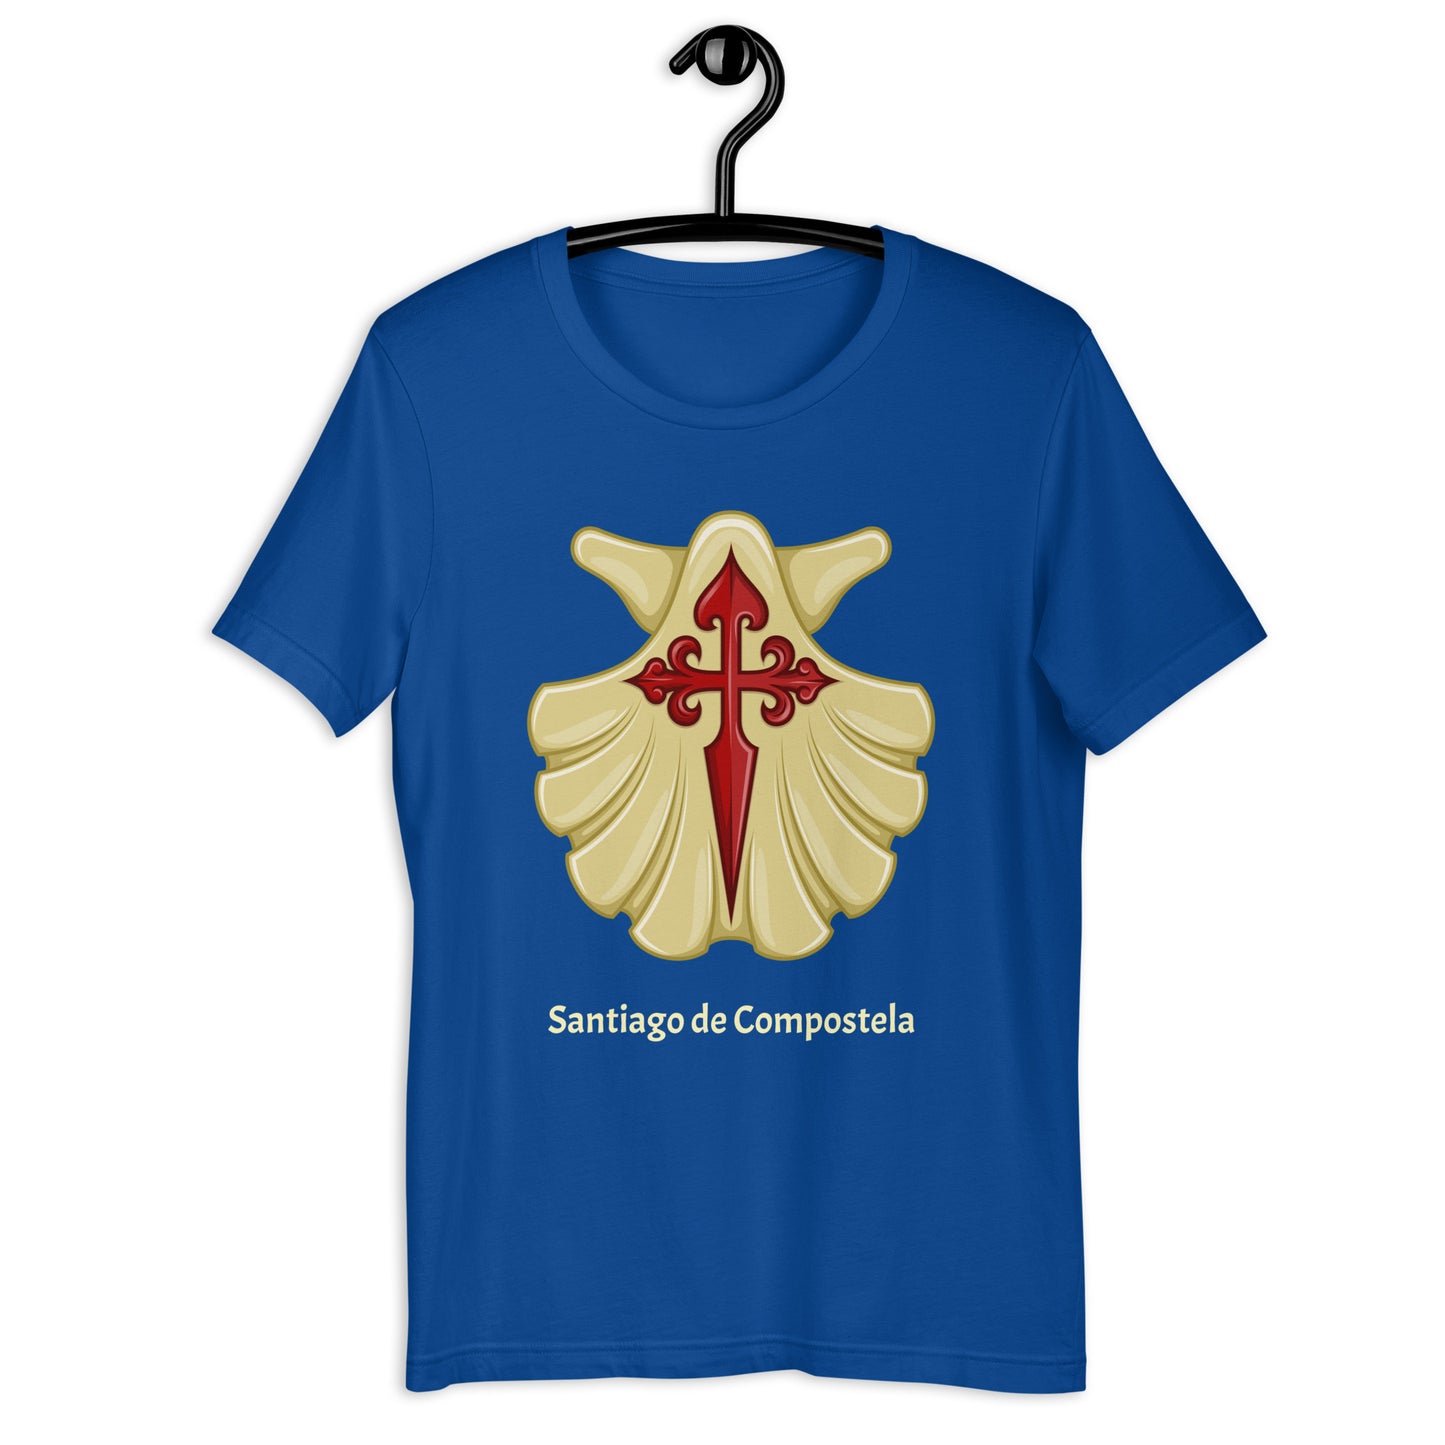 Santiago de Compostela unisex t-shirt